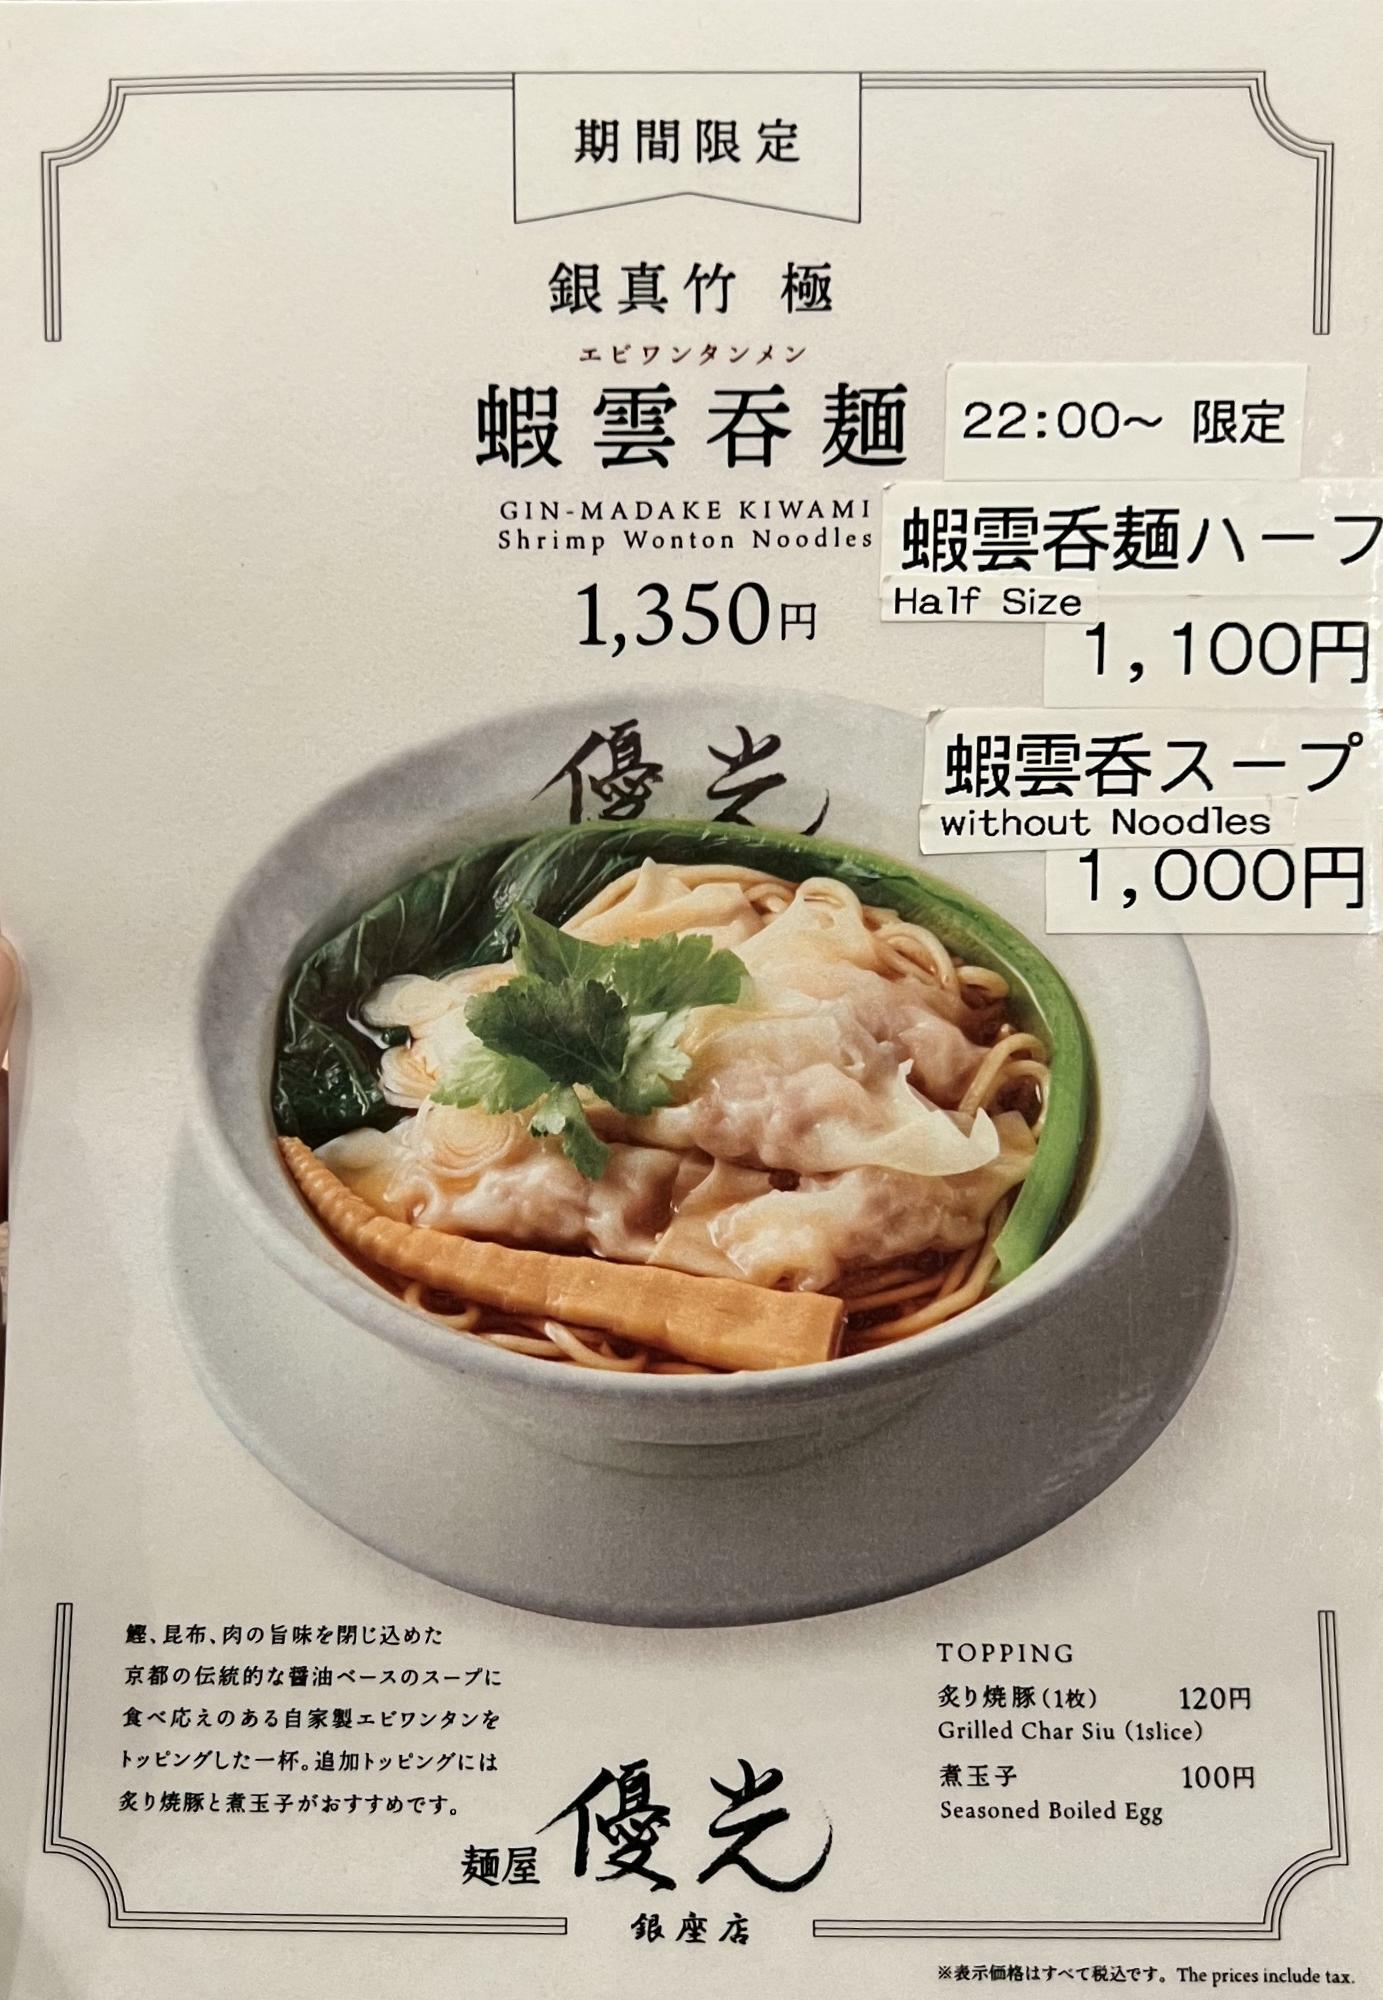 銀真竹の蝦雲吞麺バージョンといったところでしょうか。